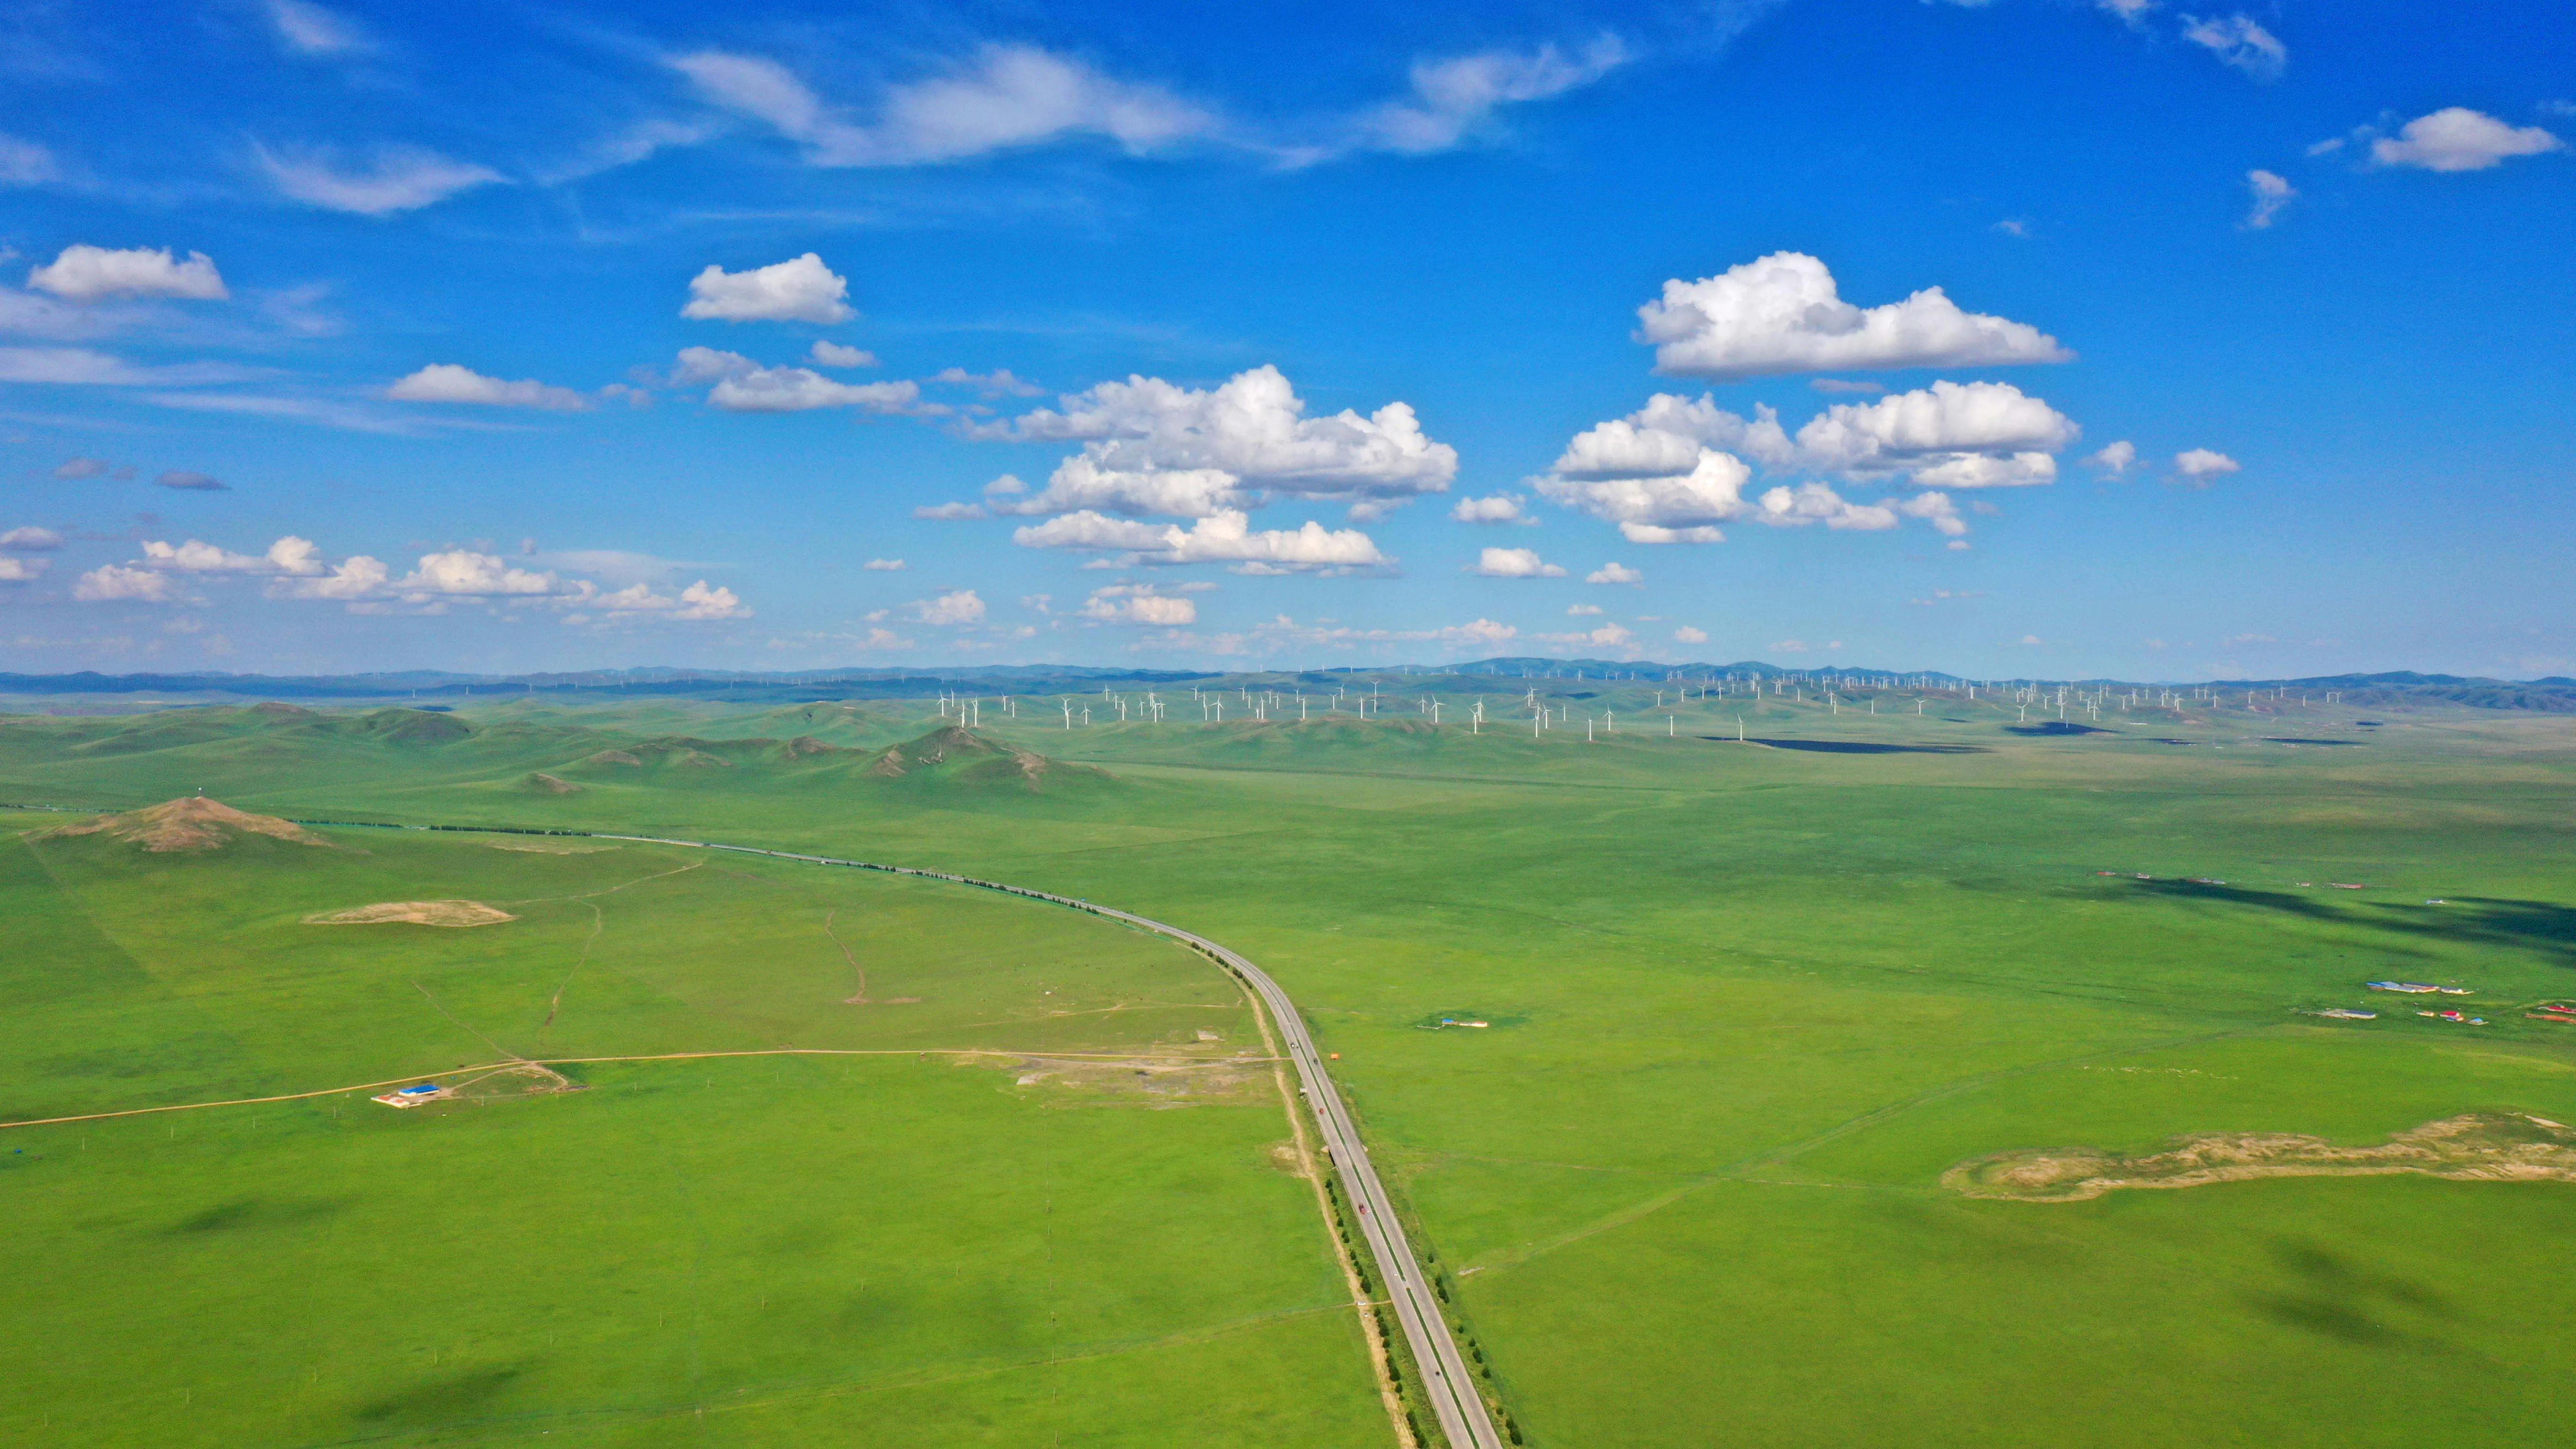 内蒙古：夏日草原景美如画